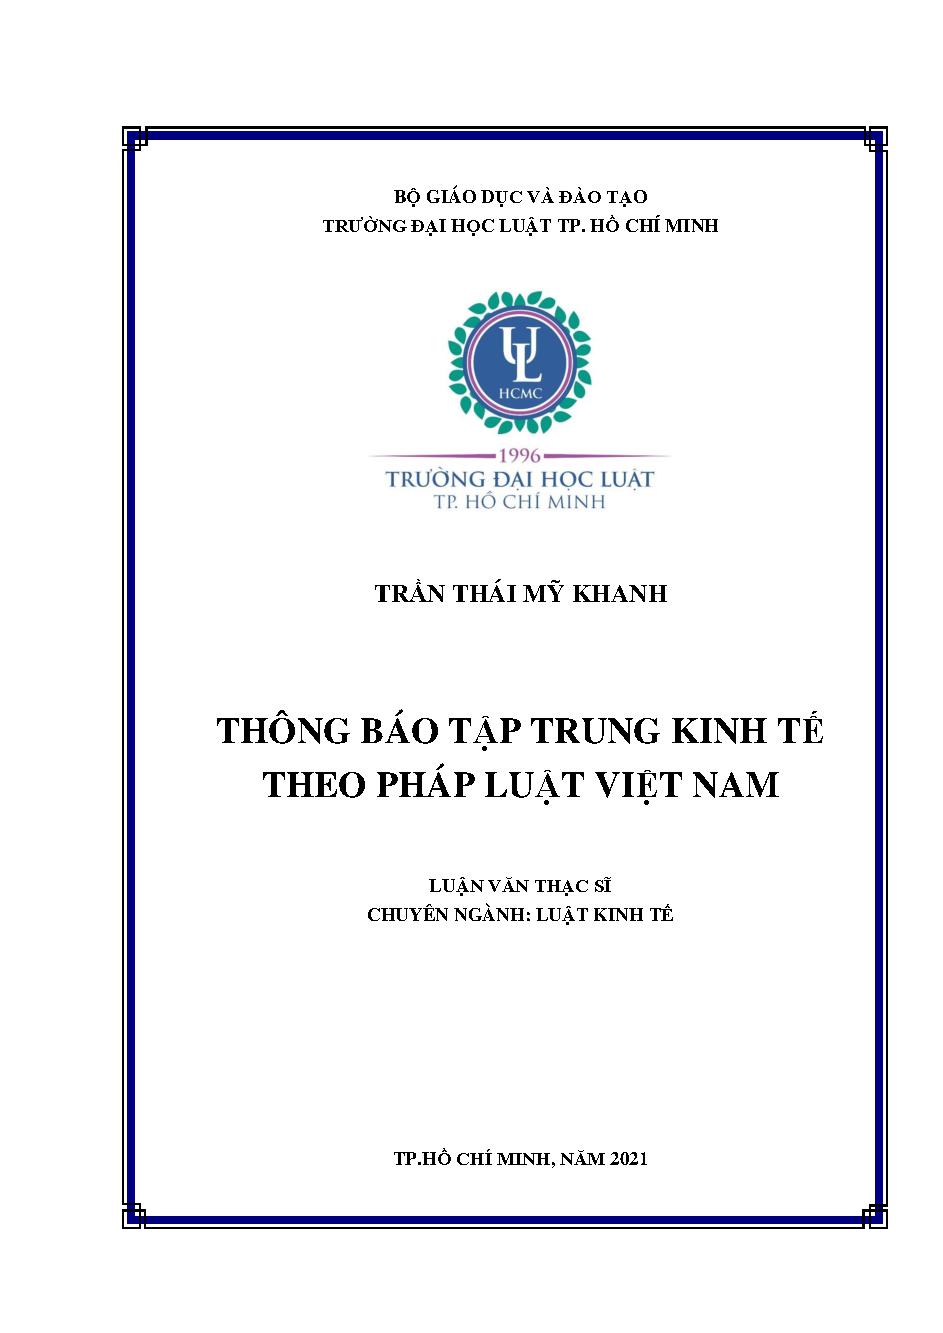 Thông báo tập trung kinh tế theo pháp luật Việt Nam